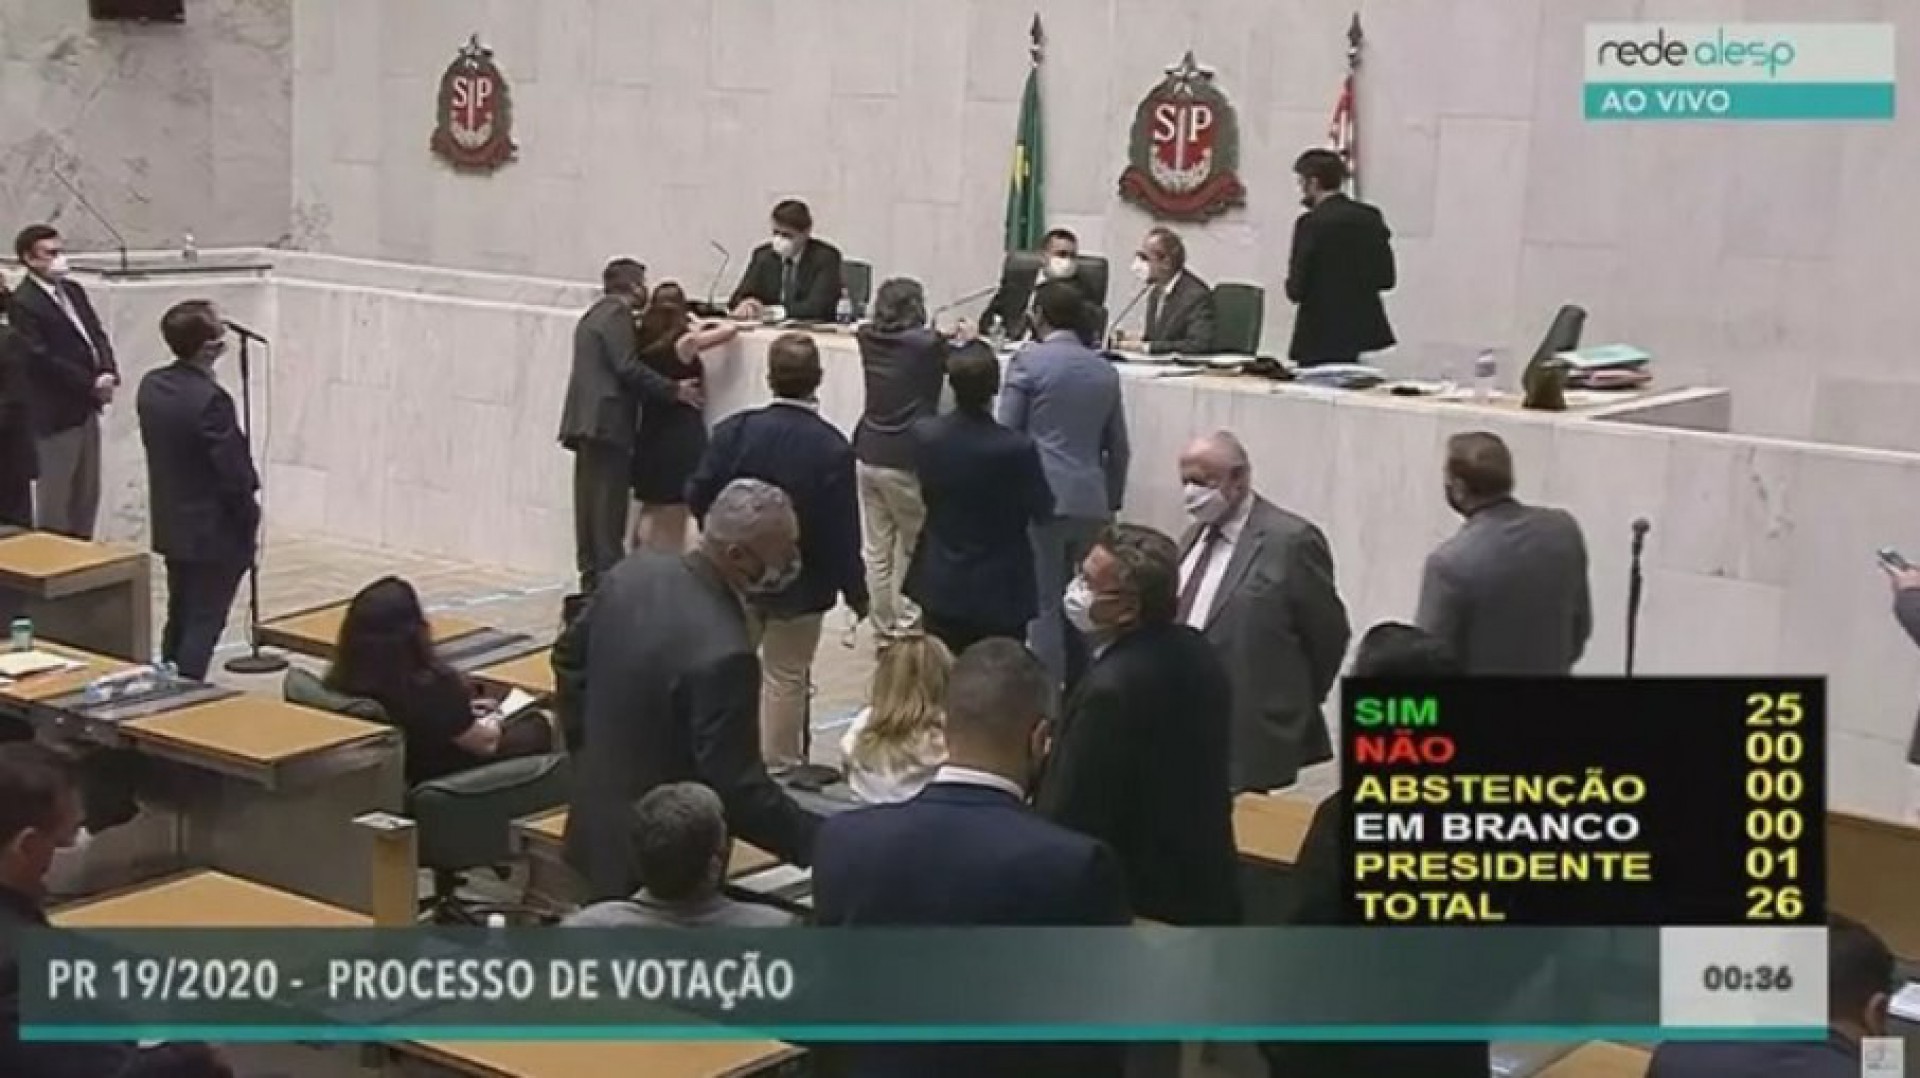 Deputado estadual Fernando Cury (Cidadania) coloca mão no seio de deputada estadual Isa Penna (PSOL) durante sessão na Alesp - Reprodução